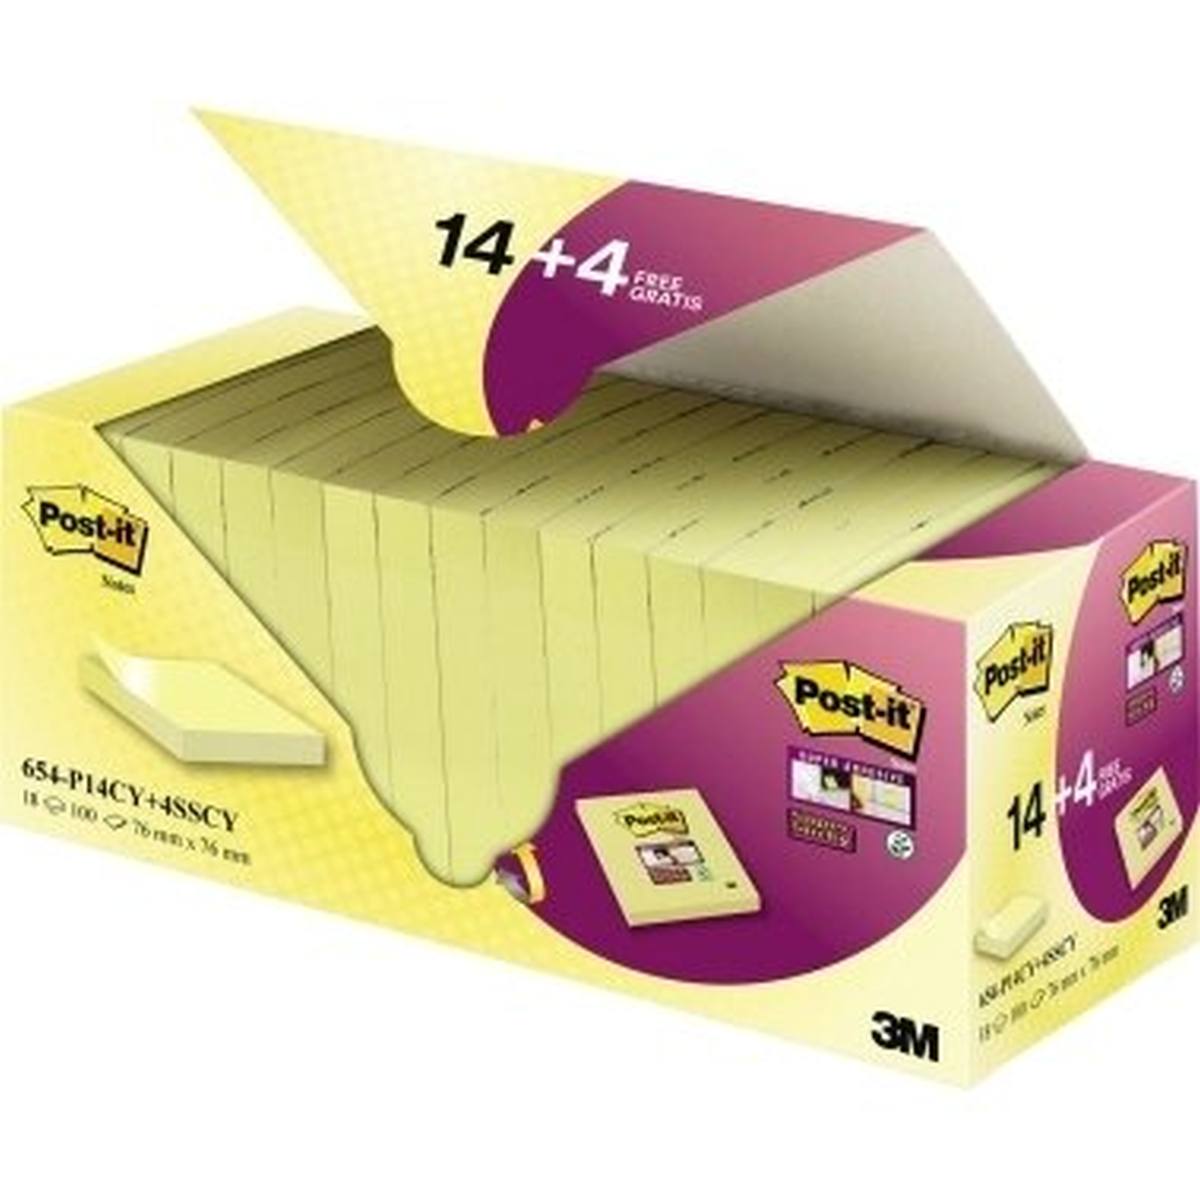 3M Post-it Notes Promotion 654-P14CY+4SSCY 14 blocs de Post-it Notes à 100 feuilles, jaune, 76 mm x 76 mm, certifiés PEFC, y compris 4 blocs de Post-it Super Sticky Notes à 90 feuilles, jaune, 76 mm x 76 mm, certifiés PEFC, gratuit